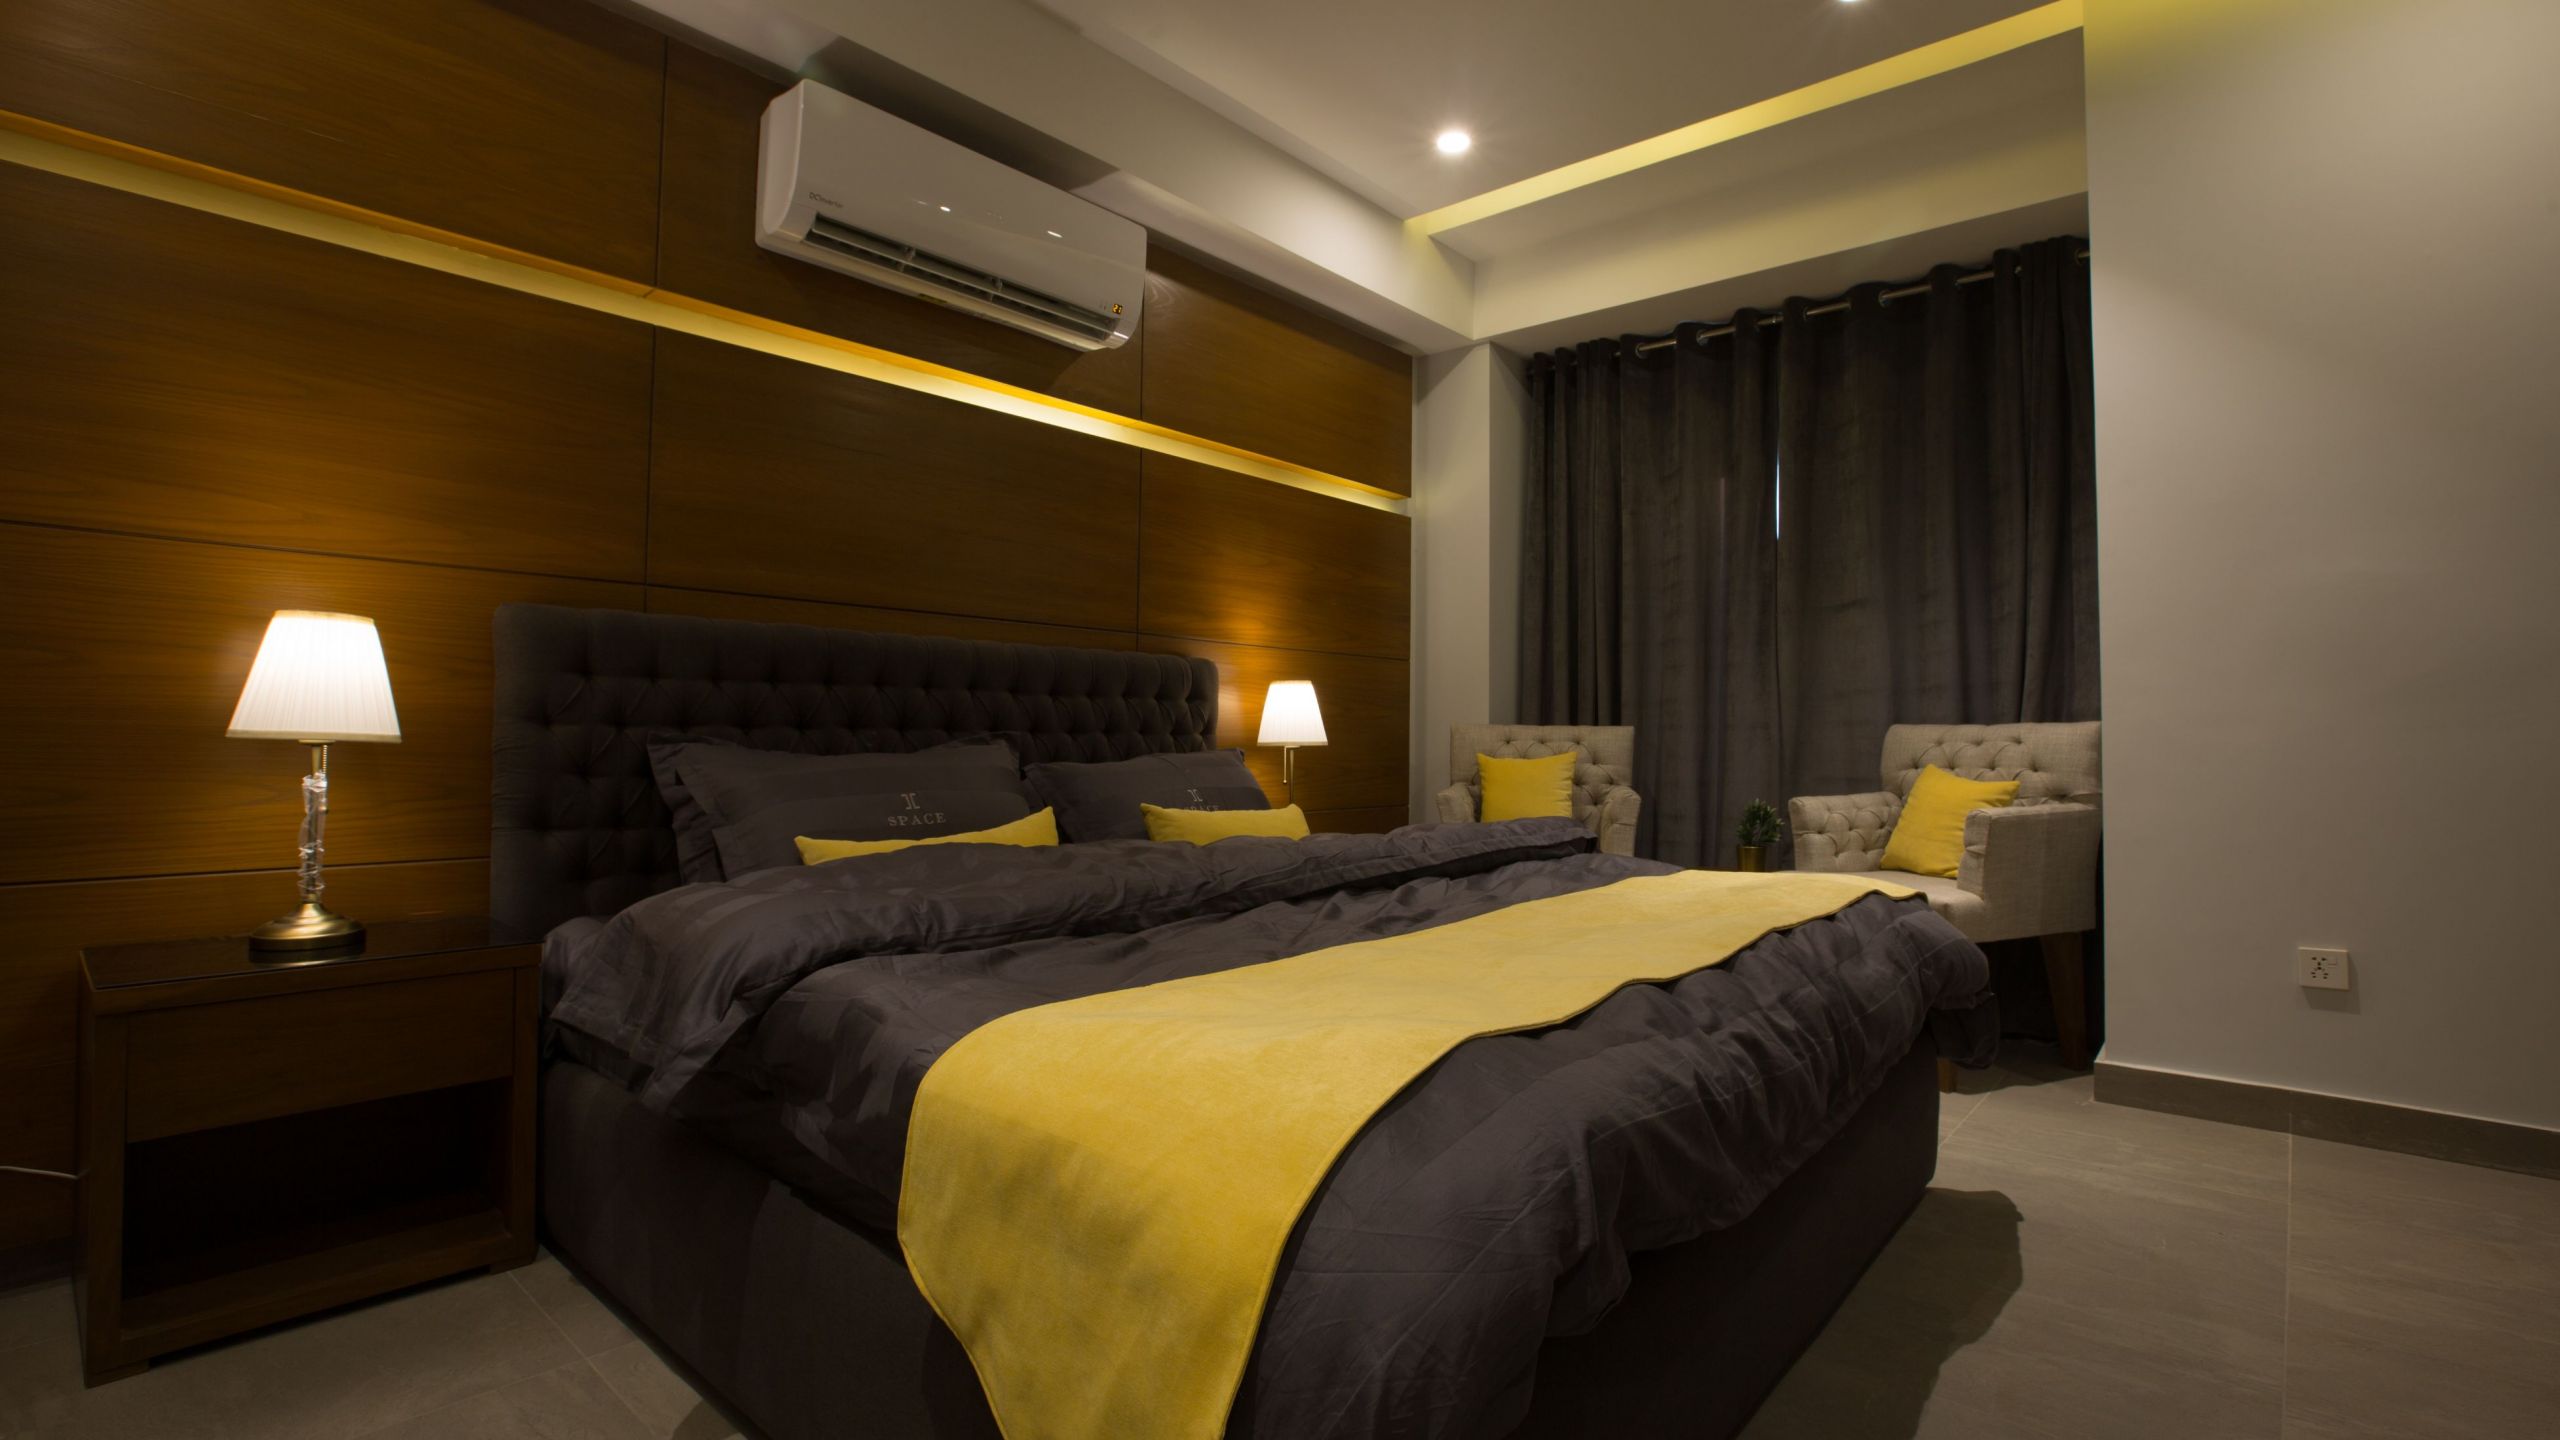 1 & 2 bedroom apartments at space luxury rental suites